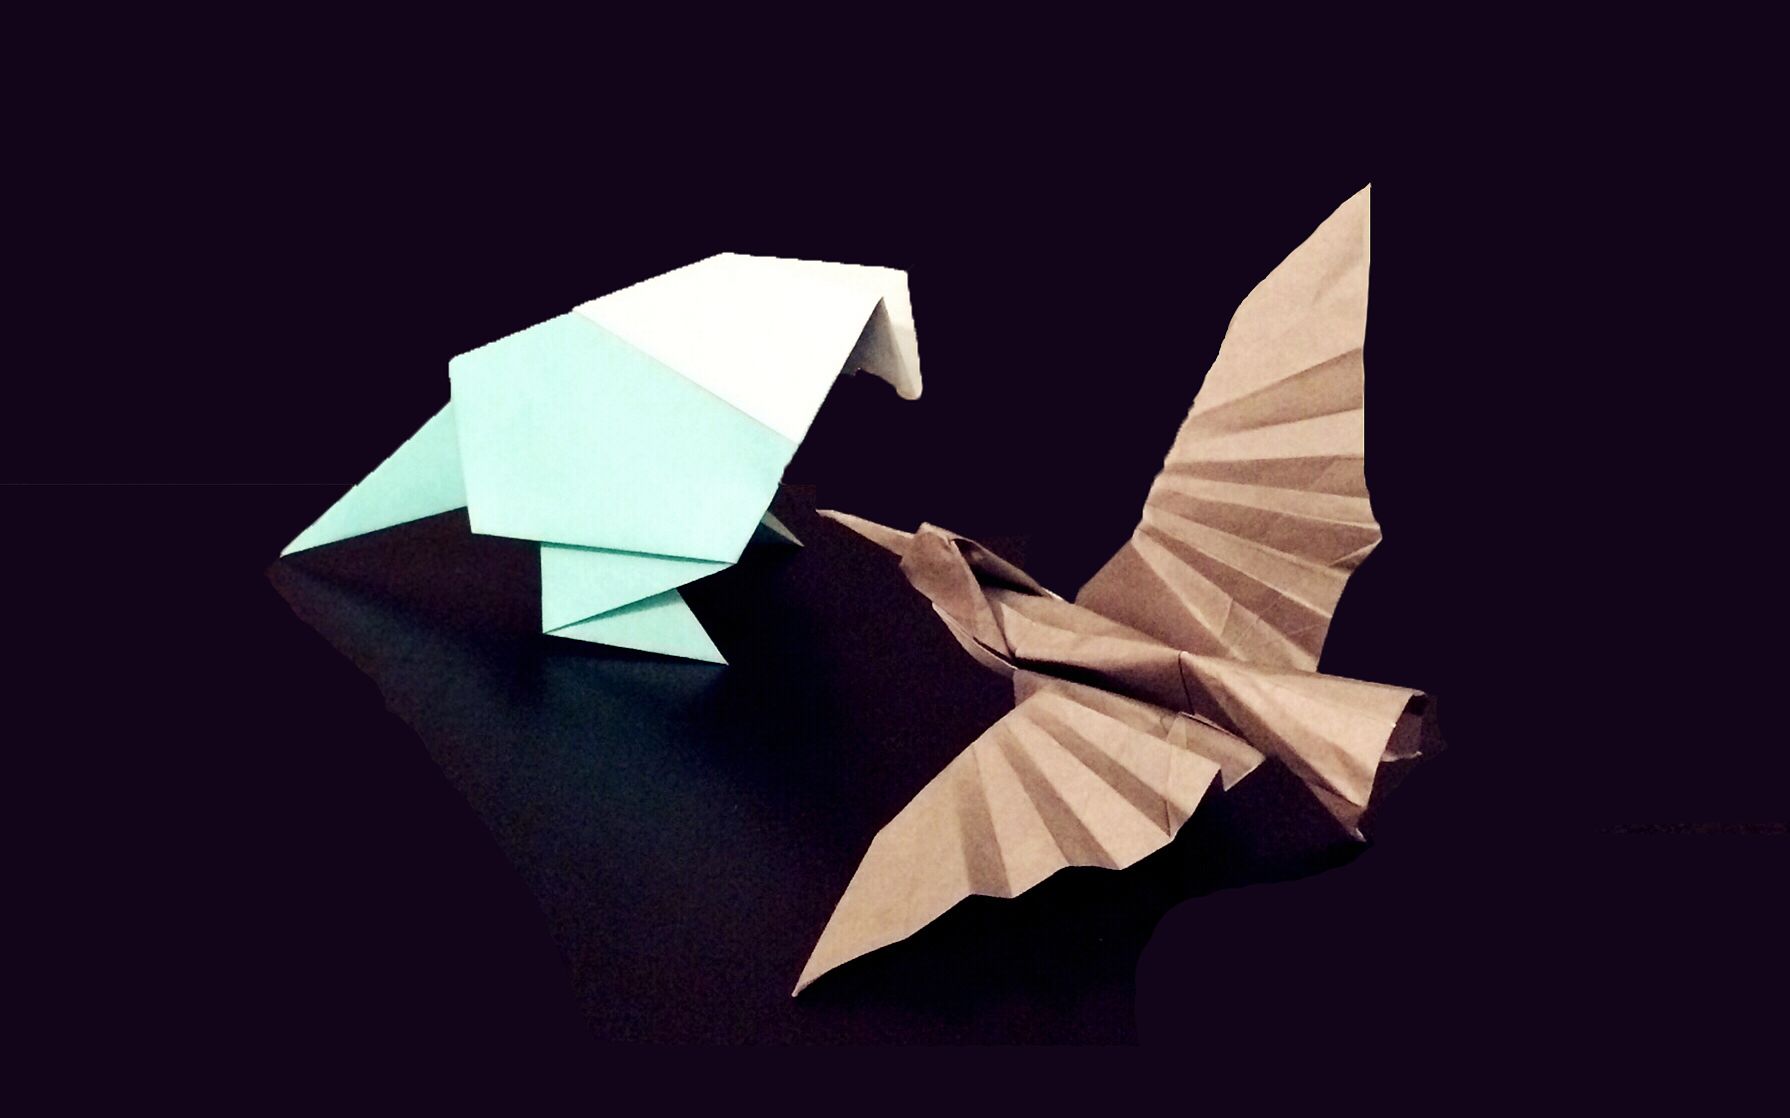 用纸叠小鸟怎么叠,小鸟的折纸步骤图 - 伤感说说吧